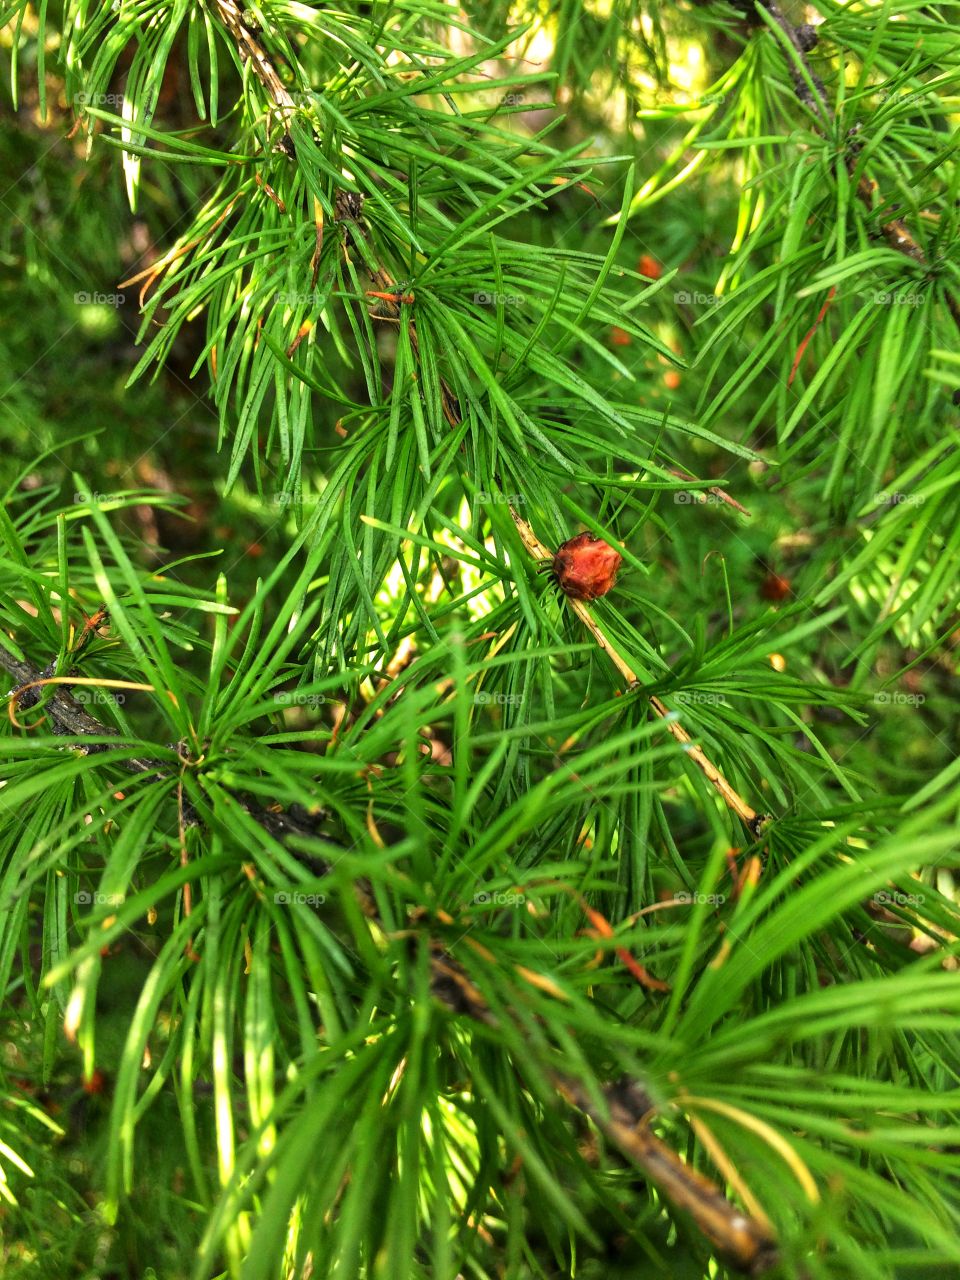 Pine tree needles 